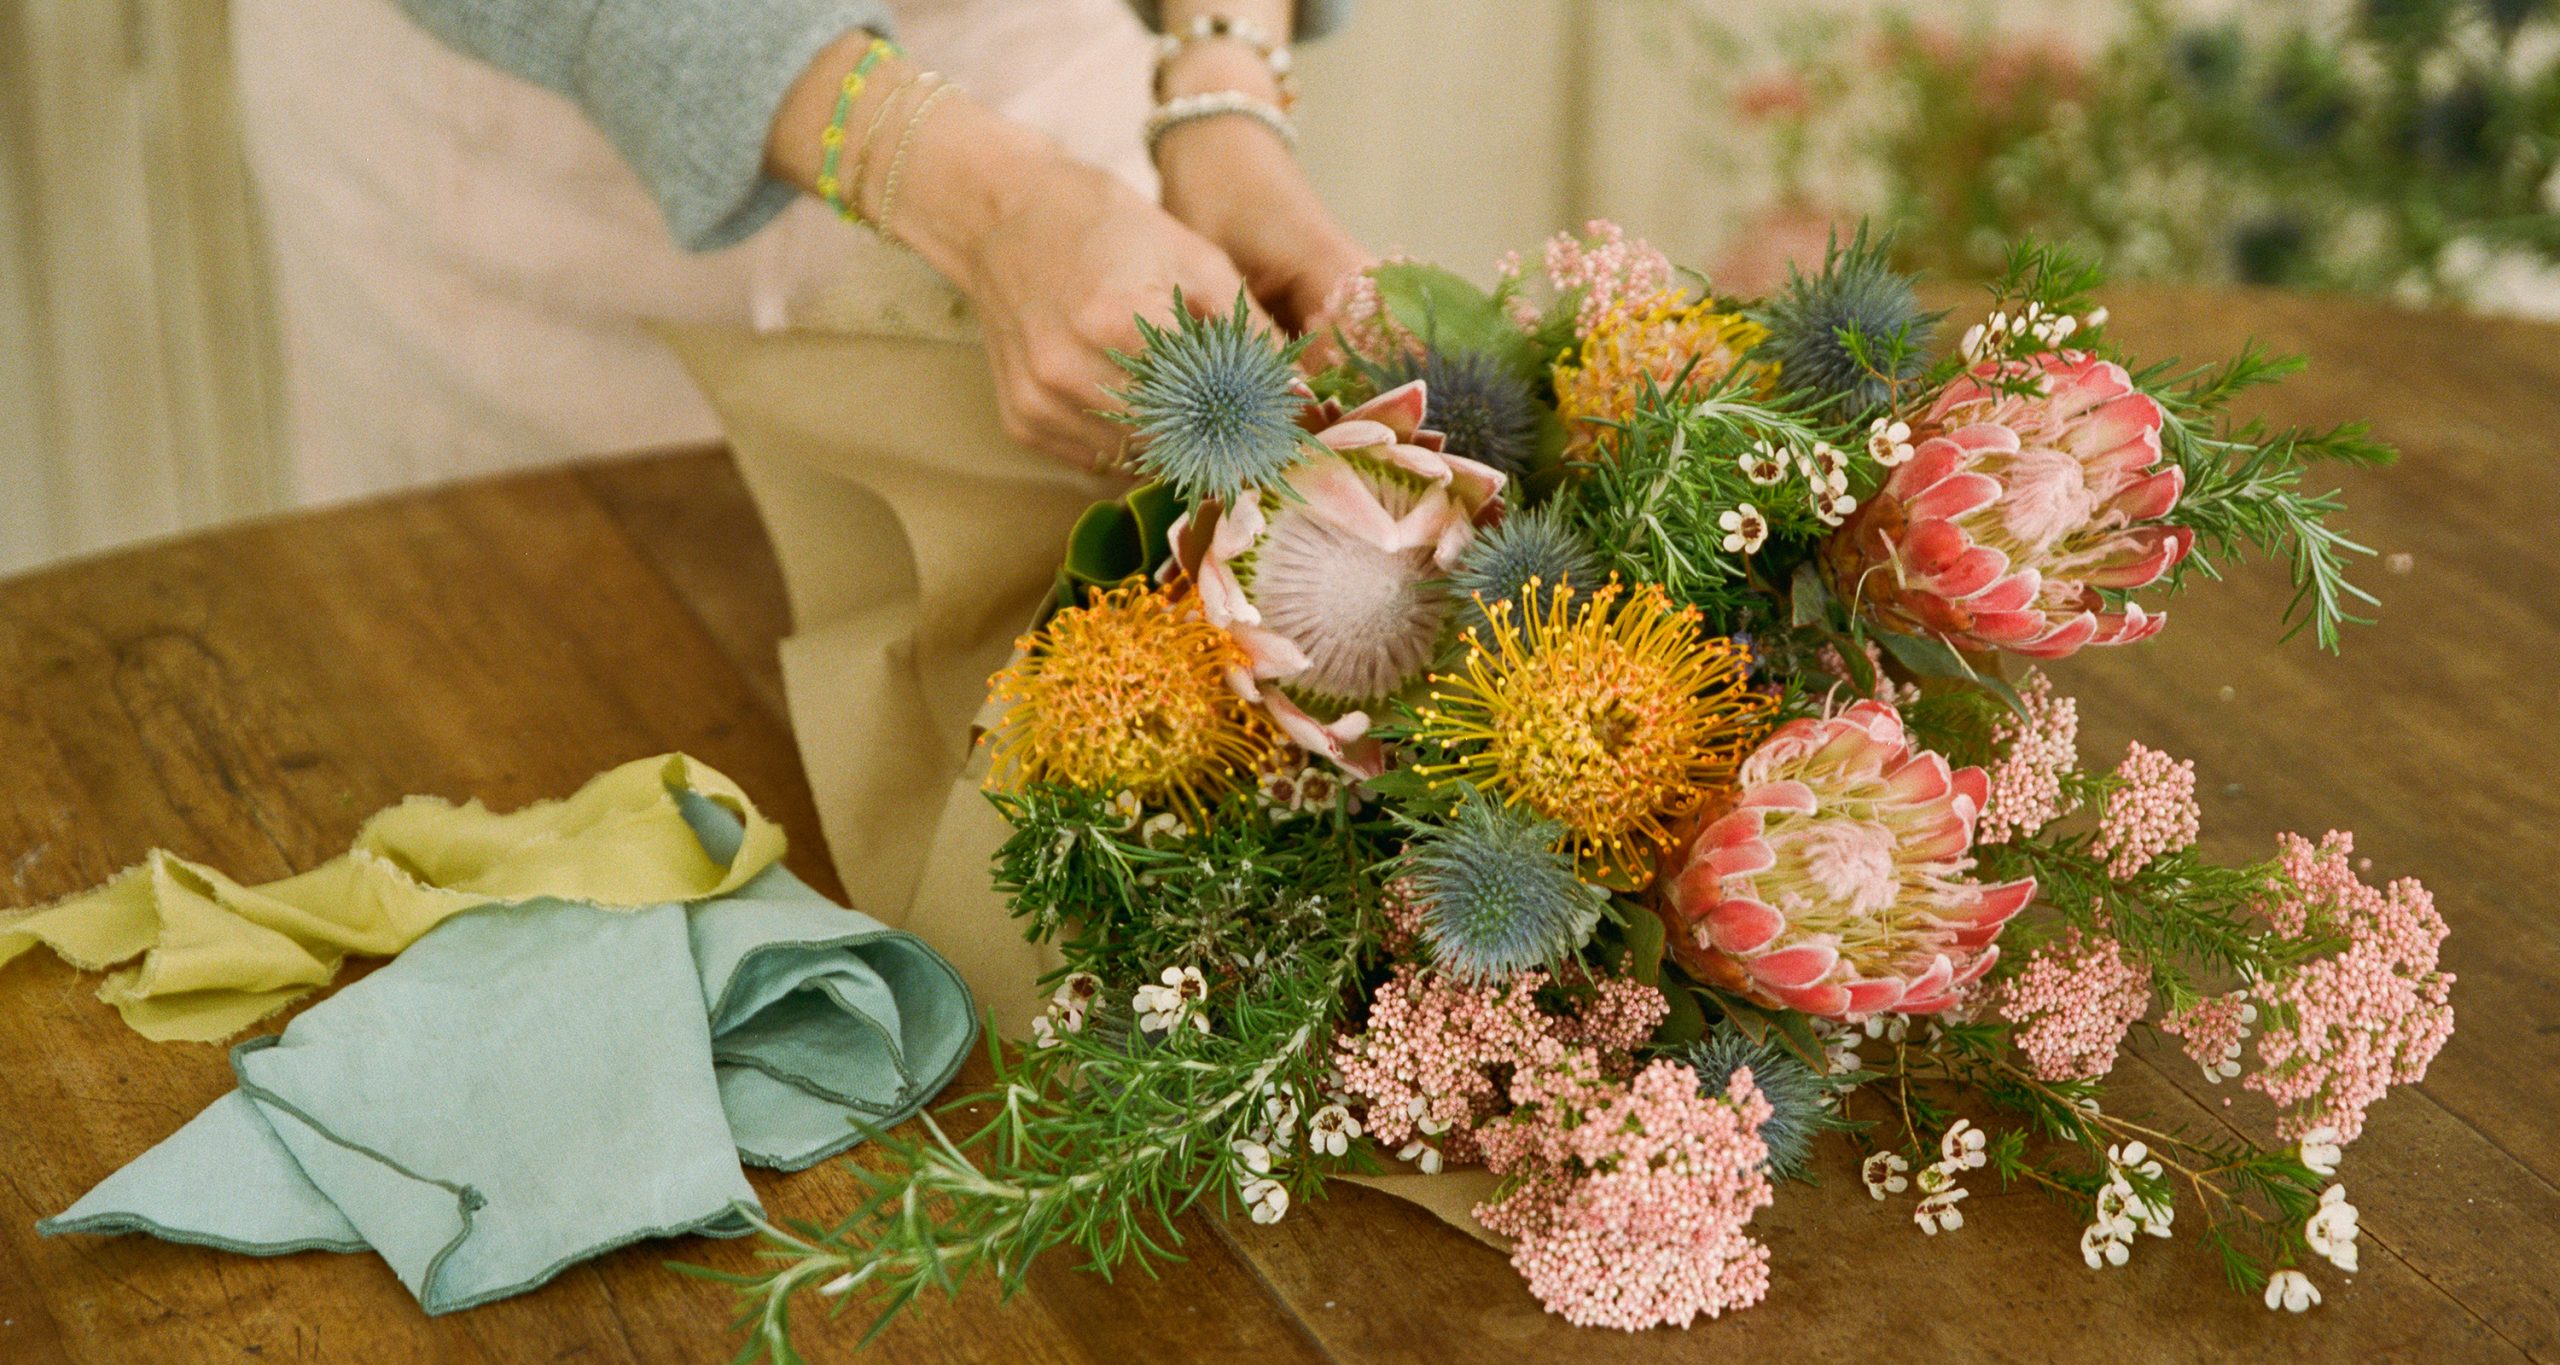 Spring Floral Arrangement Tips From Gjusta Flower Shop | Jenni Kayne